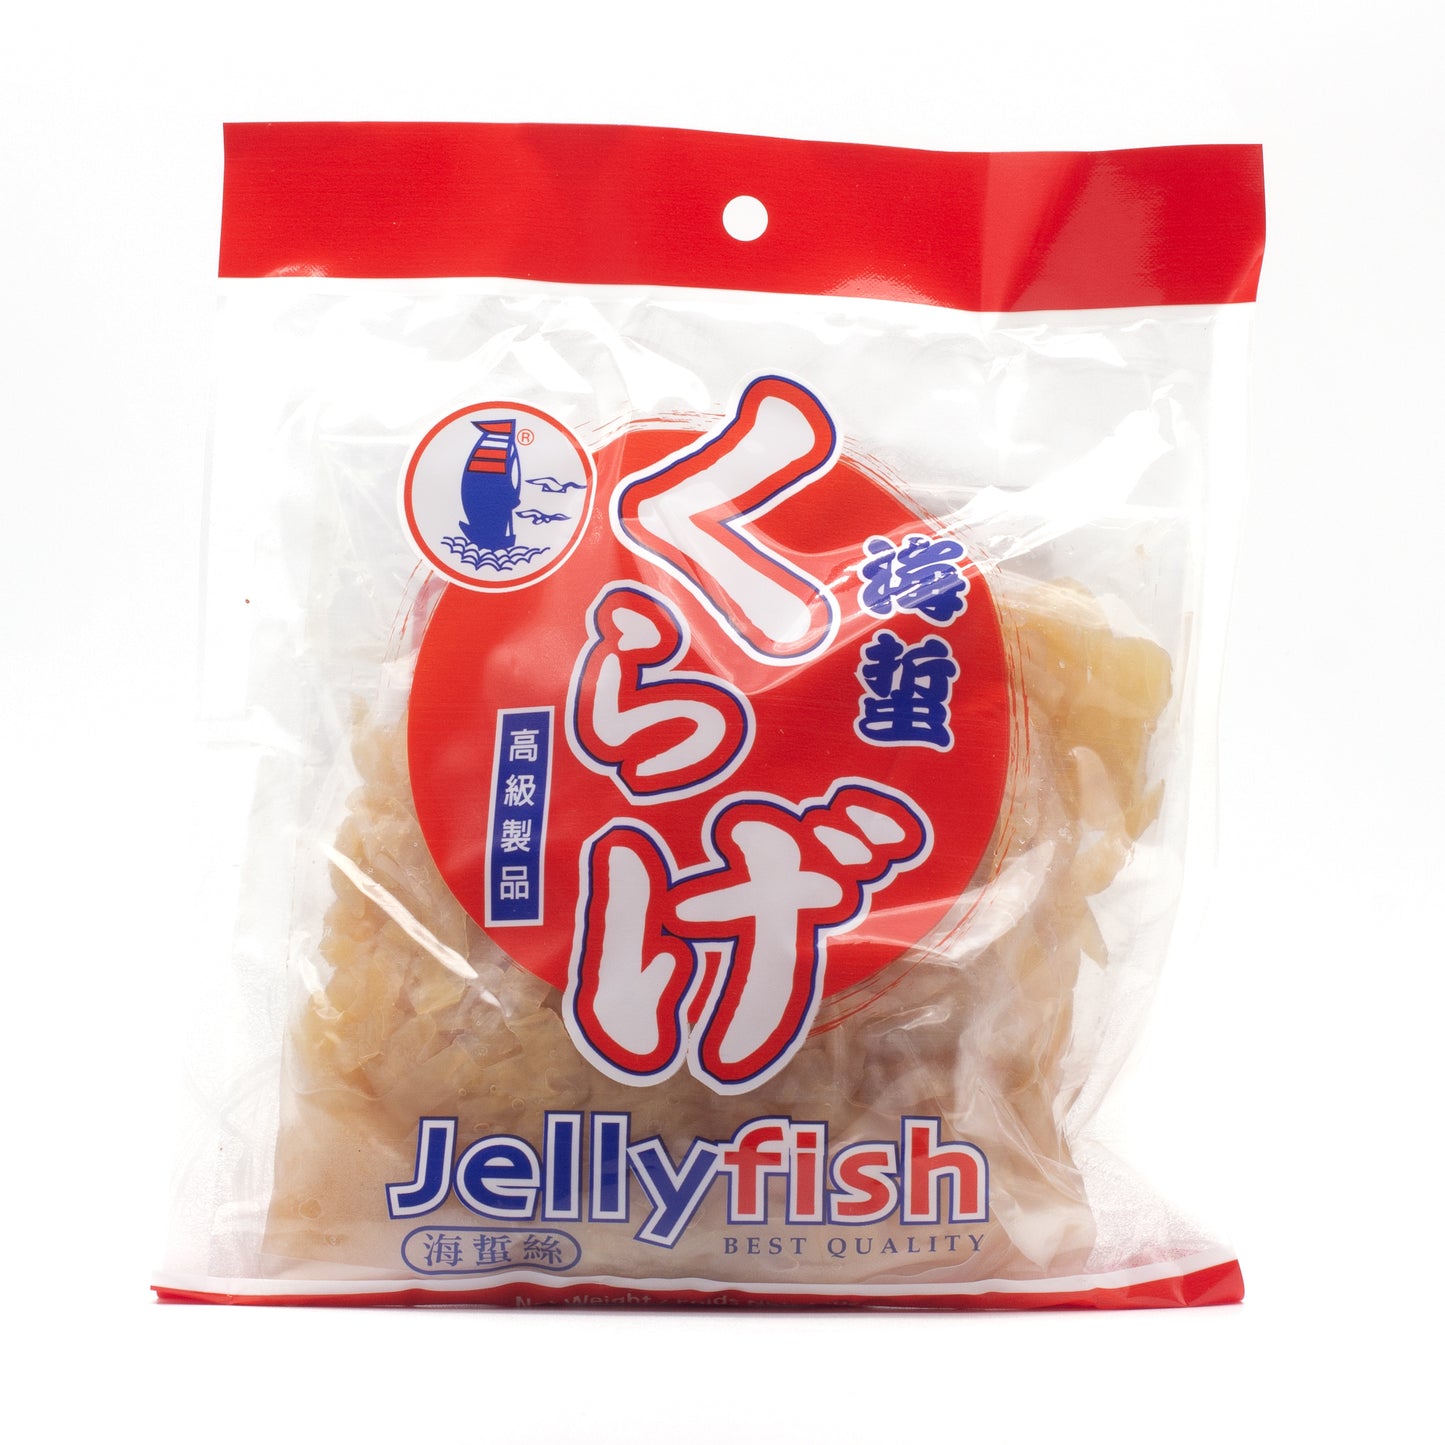 Jellyfish 海蜇丝(14 OZ)